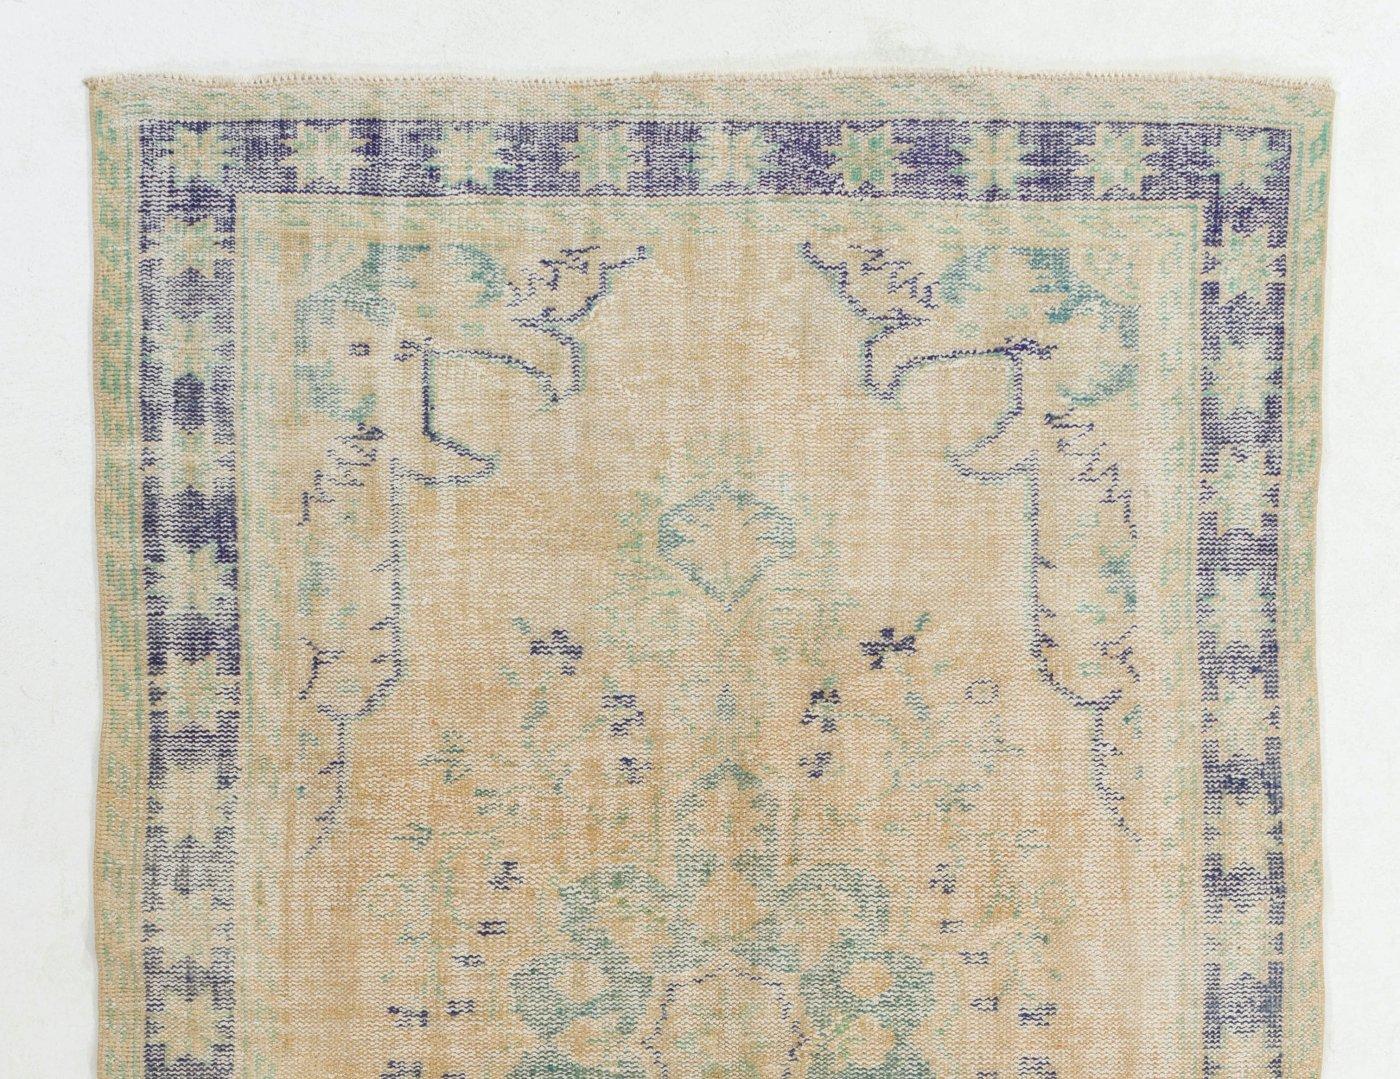 Ein feiner handgeknüpfter türkischer Teppich aus den 1960er Jahren mit chinesischem Art-Déco-Muster. Der Teppich hat einen gleichmäßigen, niedrigen Wollflor auf Baumwollbasis. Es ist schwer und liegt flach auf dem Boden, in sehr gutem Zustand ohne